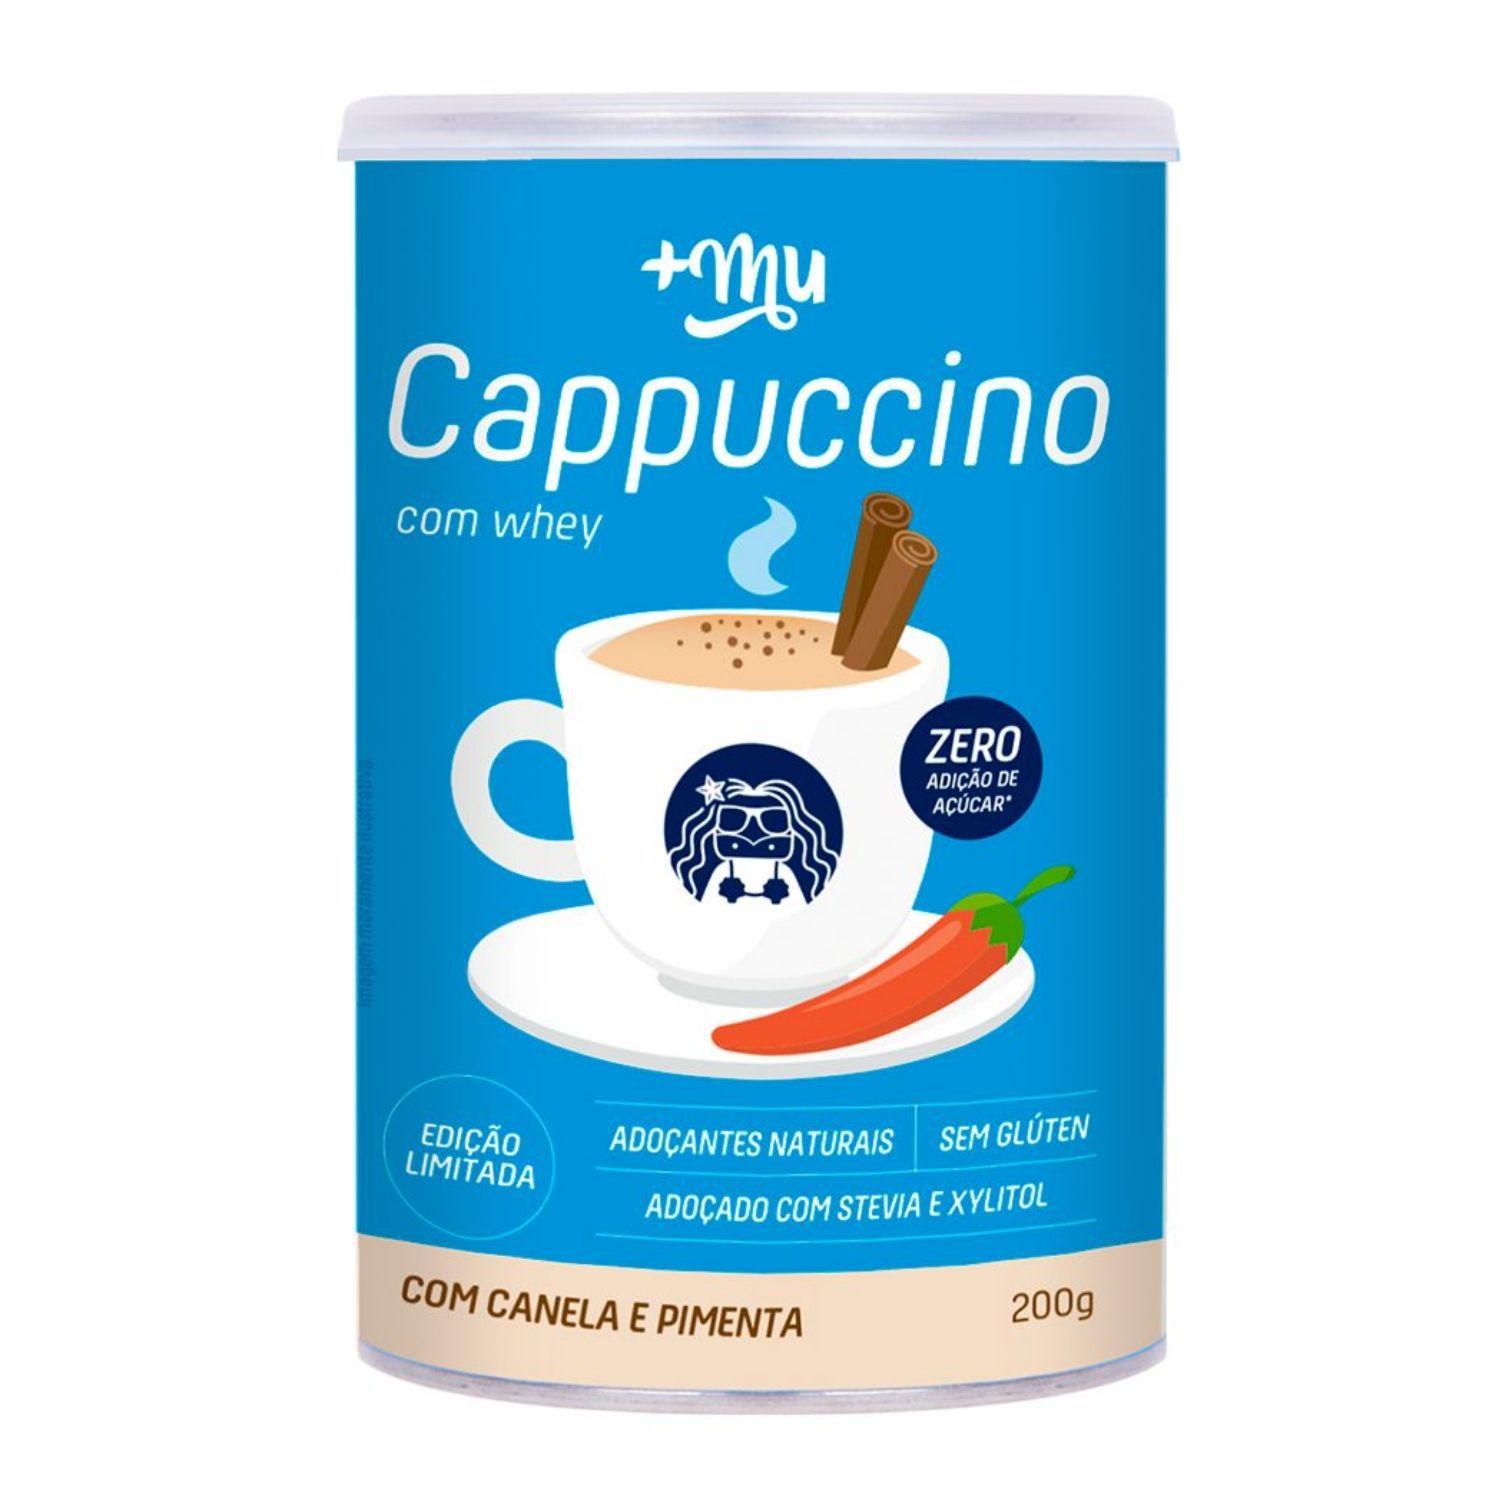 Cappuccino Proteico com Whey, Canela e Pimenta 200g +MU